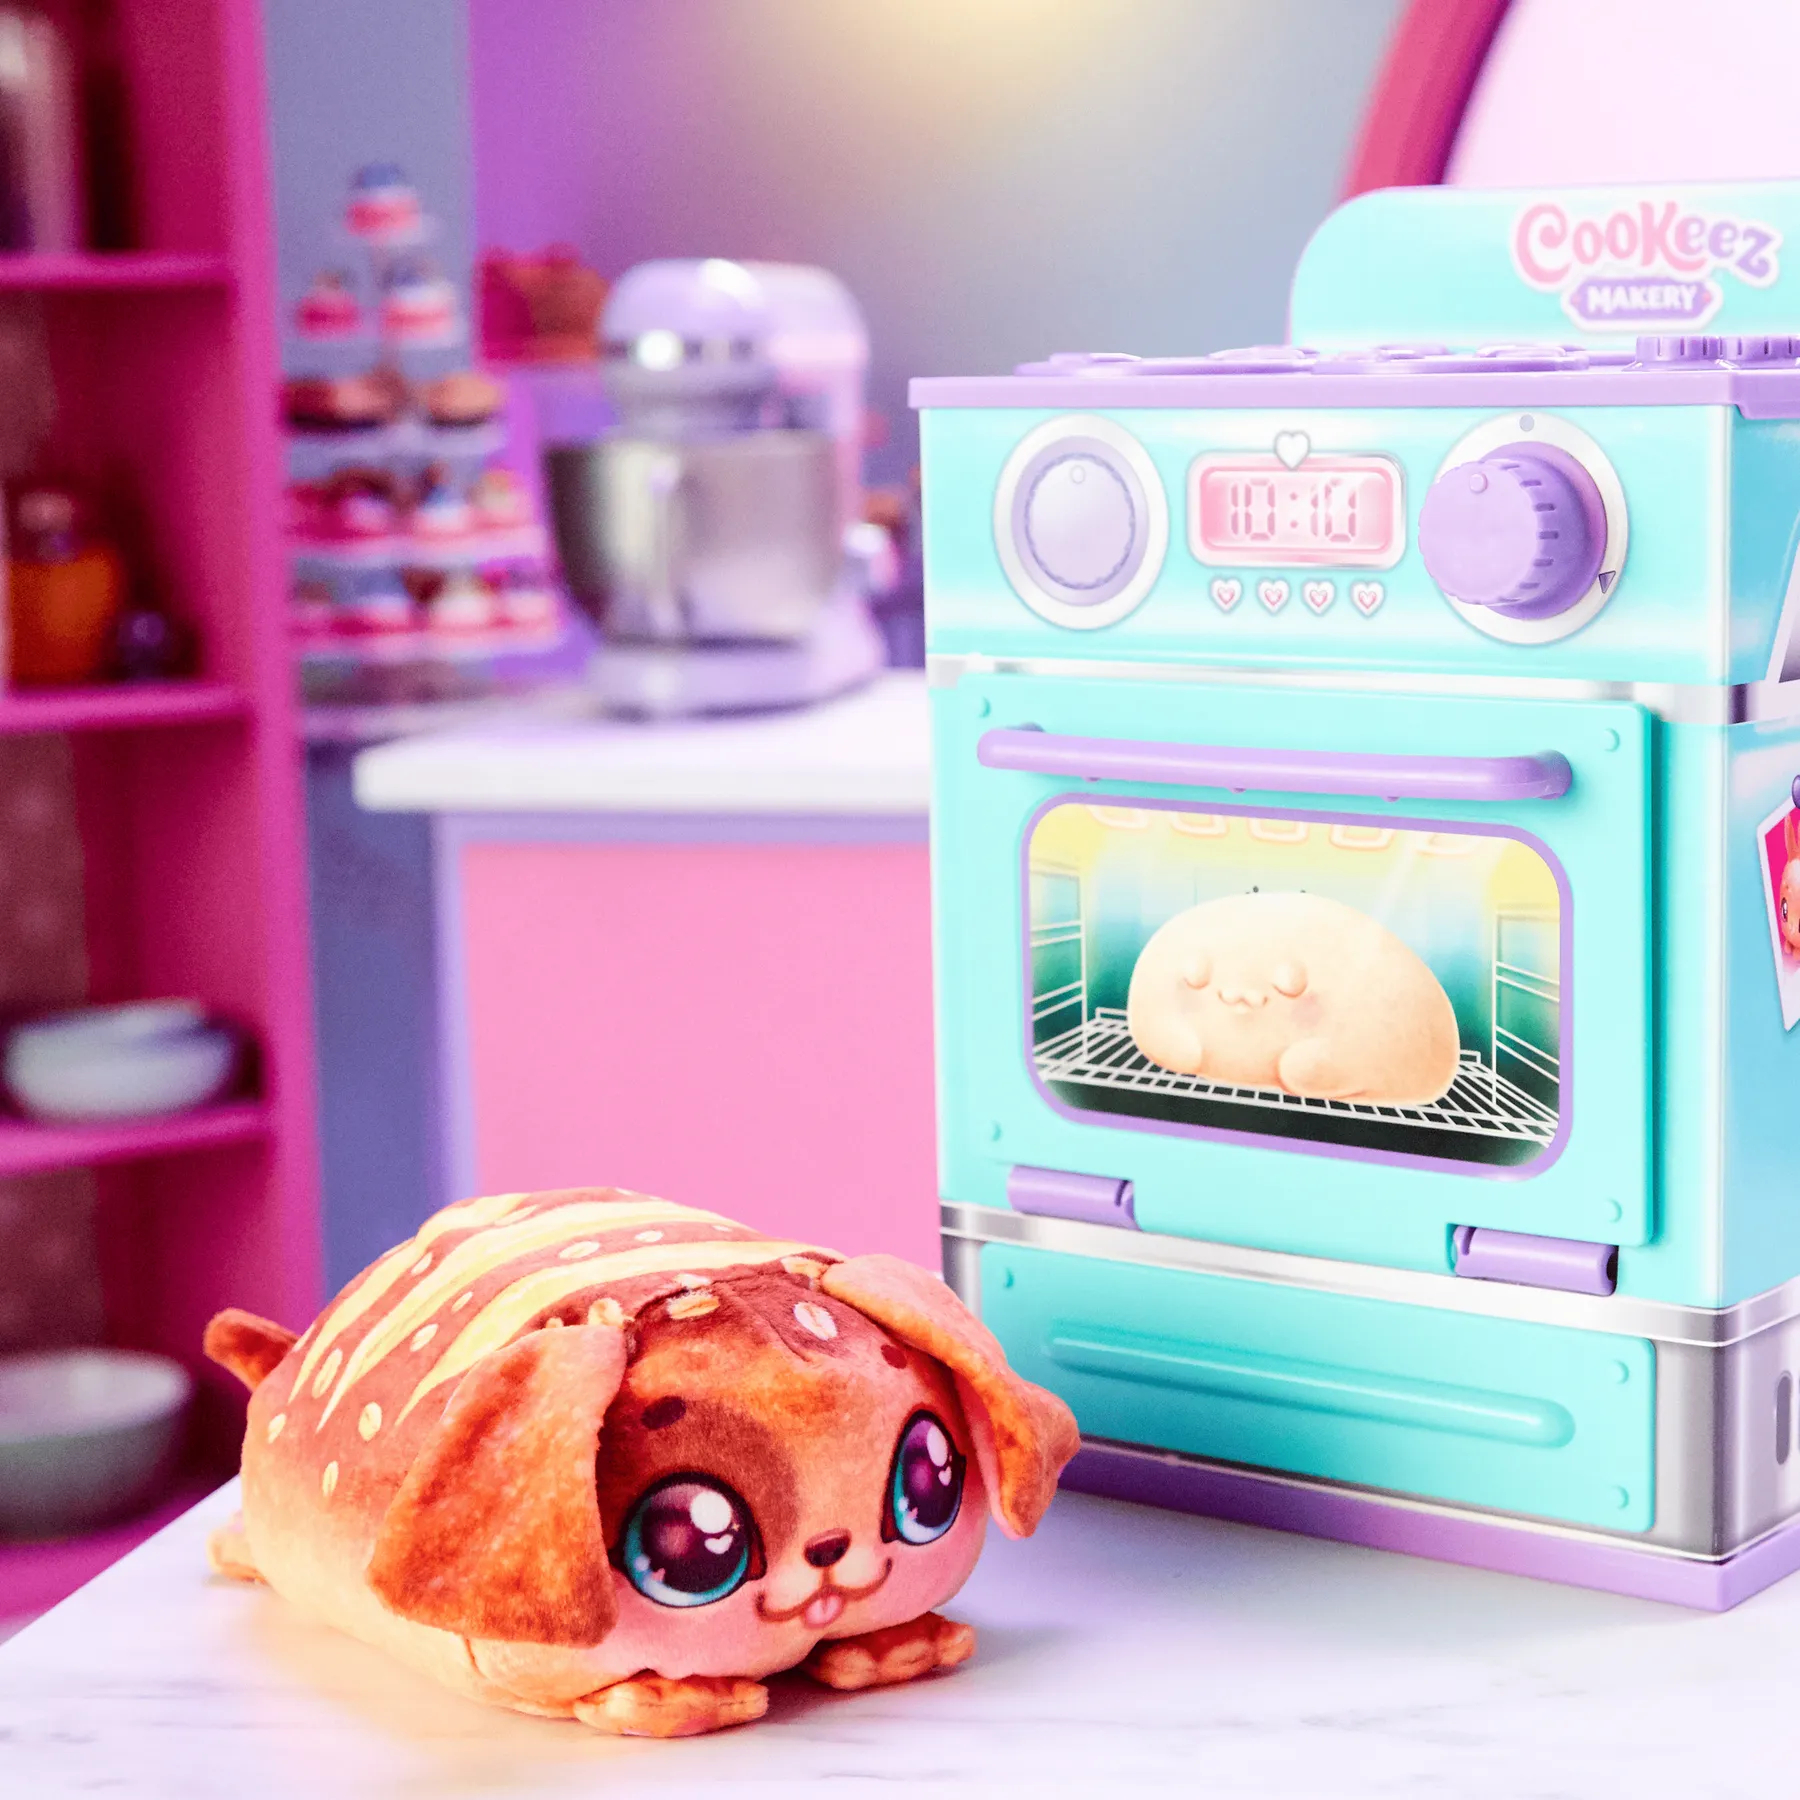 Интерактивная игрушка Cookeez Makery Магическая пекарня Синабон (23502) - фото 2